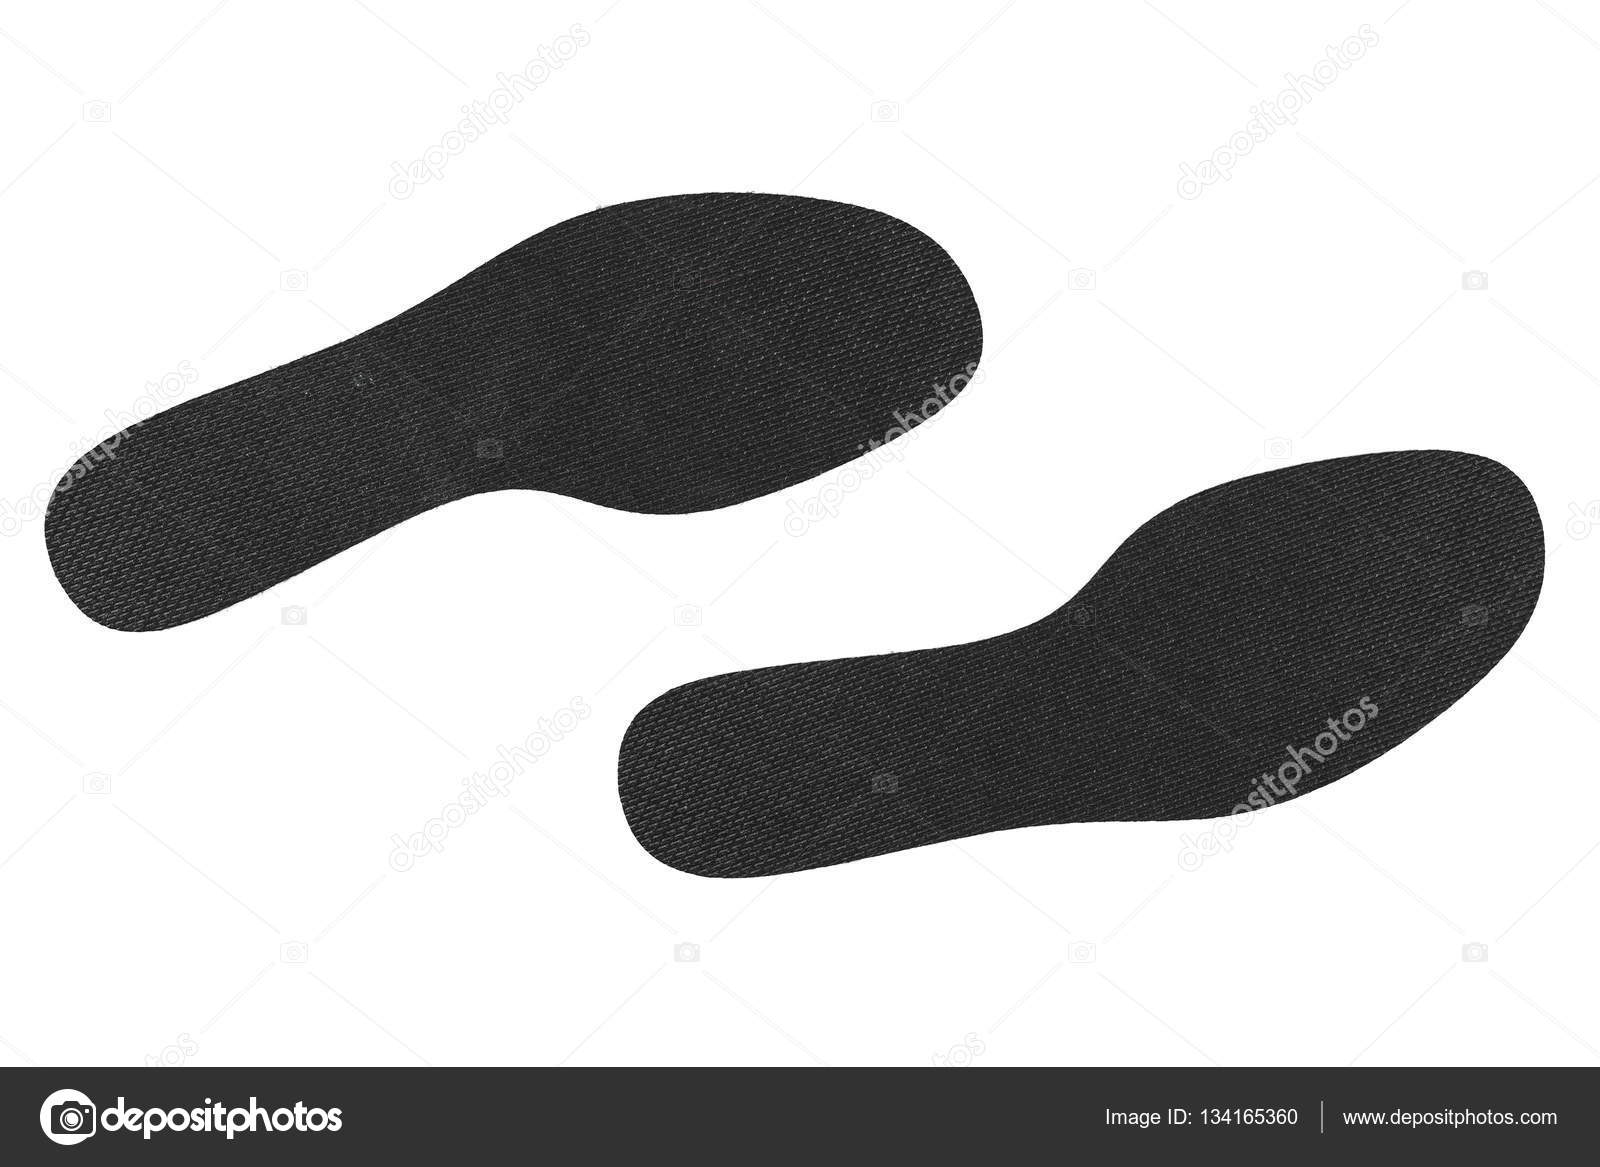 black shoe insoles